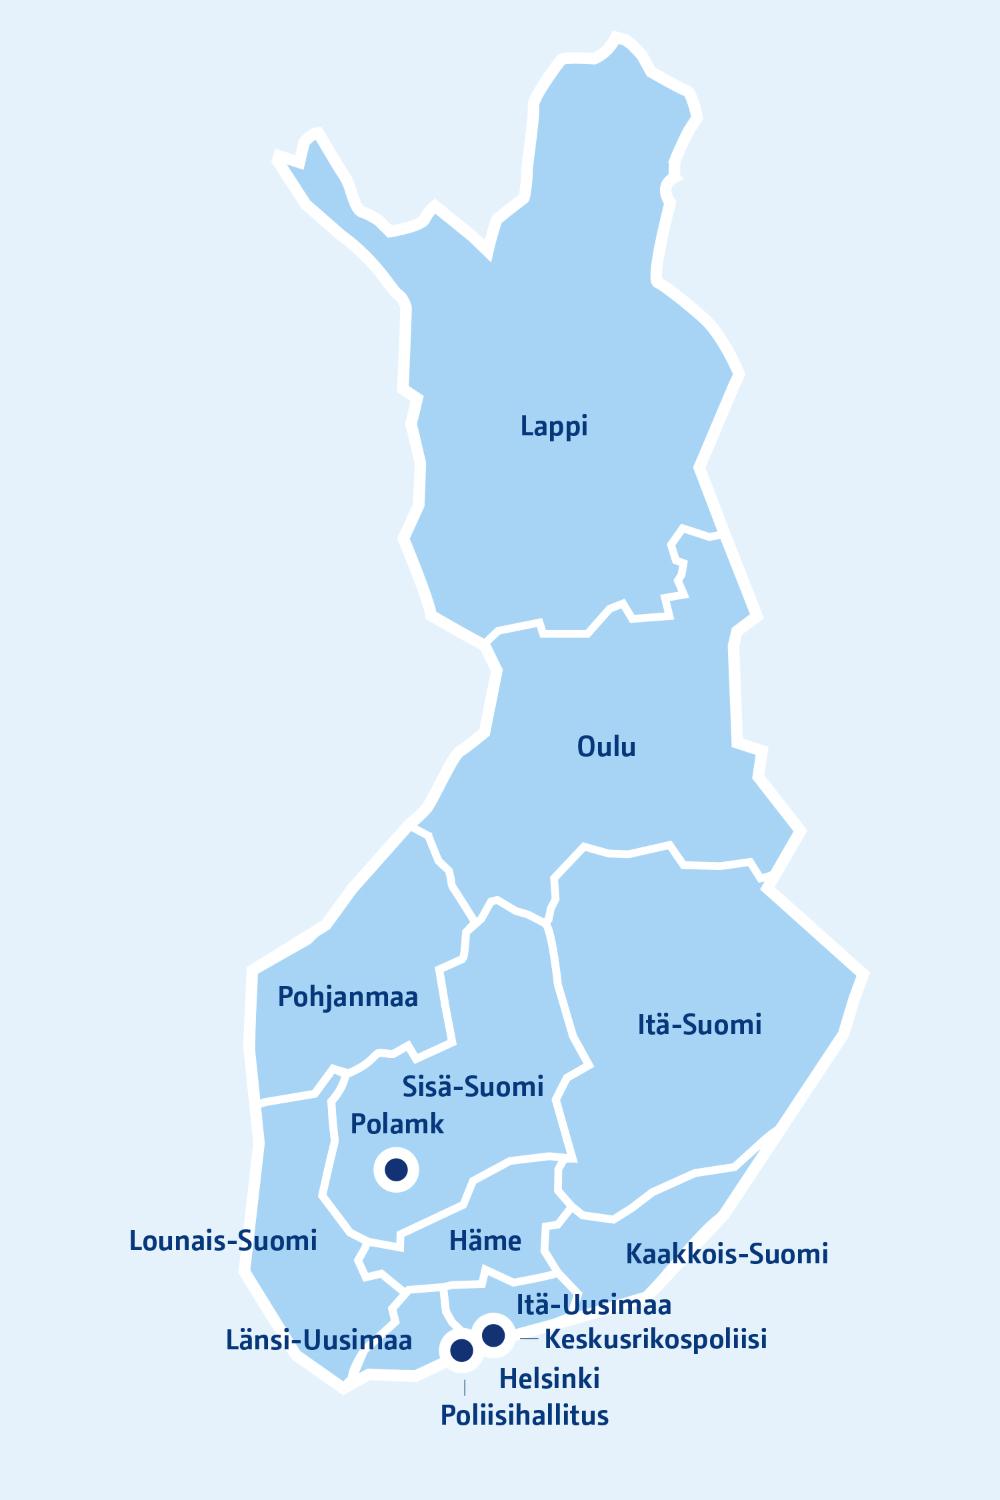 Karttakuva, johon on merkitty kaikki Suomen poliisilaitokset ja valtakunnalliset yksiköt.